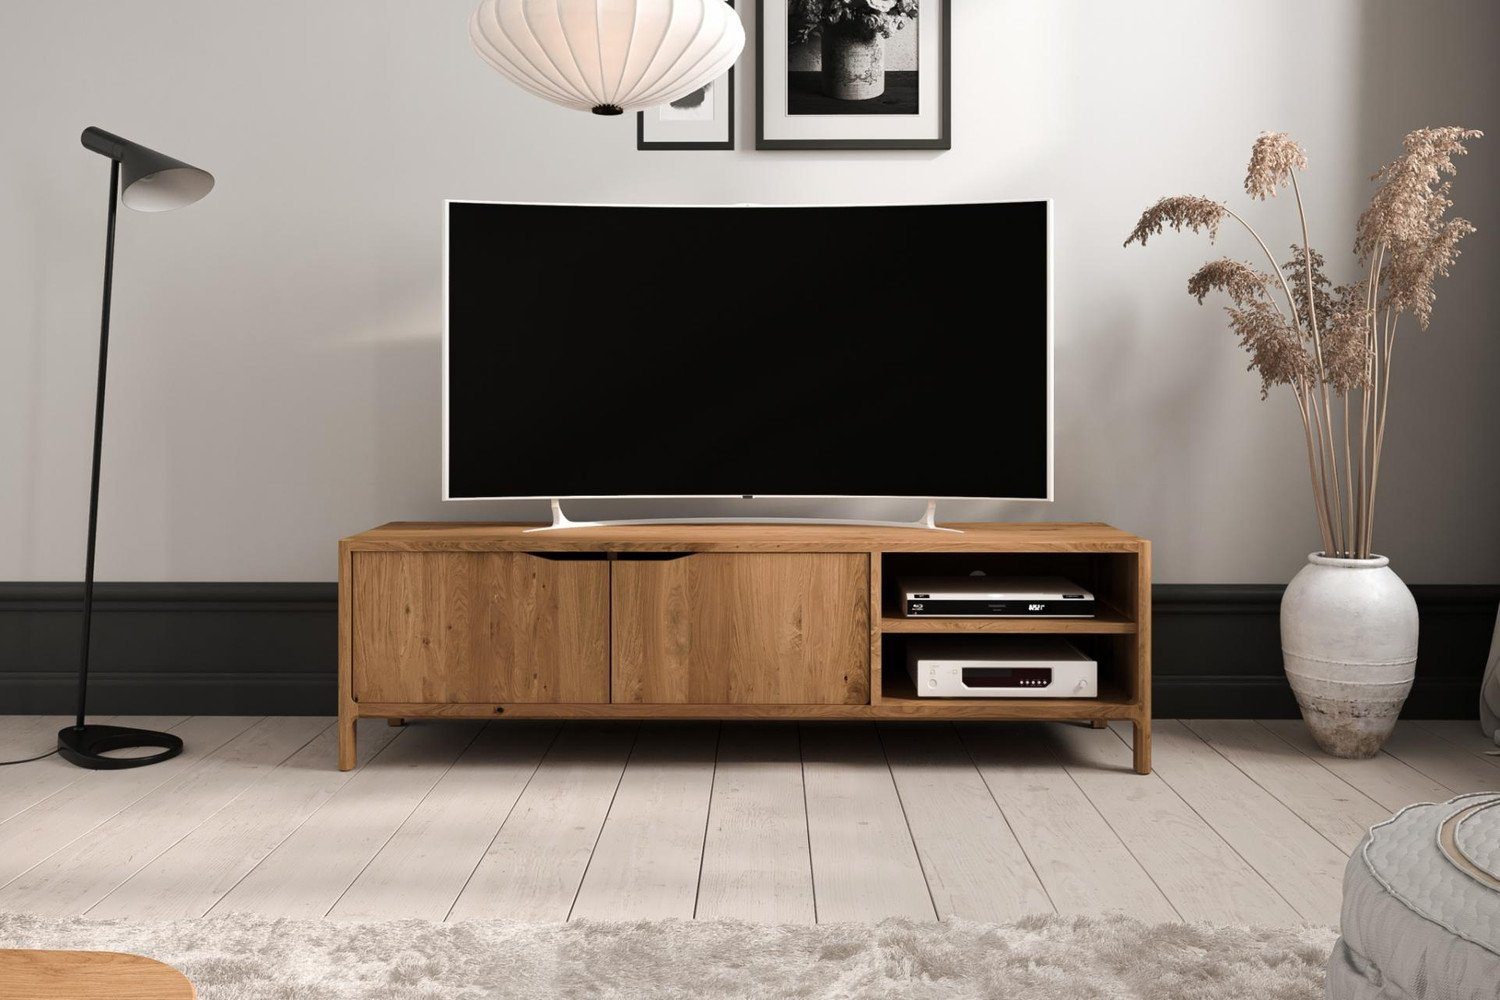 Natur24 Lowboard TV-Board Swig Wildeiche massiv geölt 160x50 mit 2 Türen  und 2 Fächern, Dekoration nicht im Lieferumfang enthalten